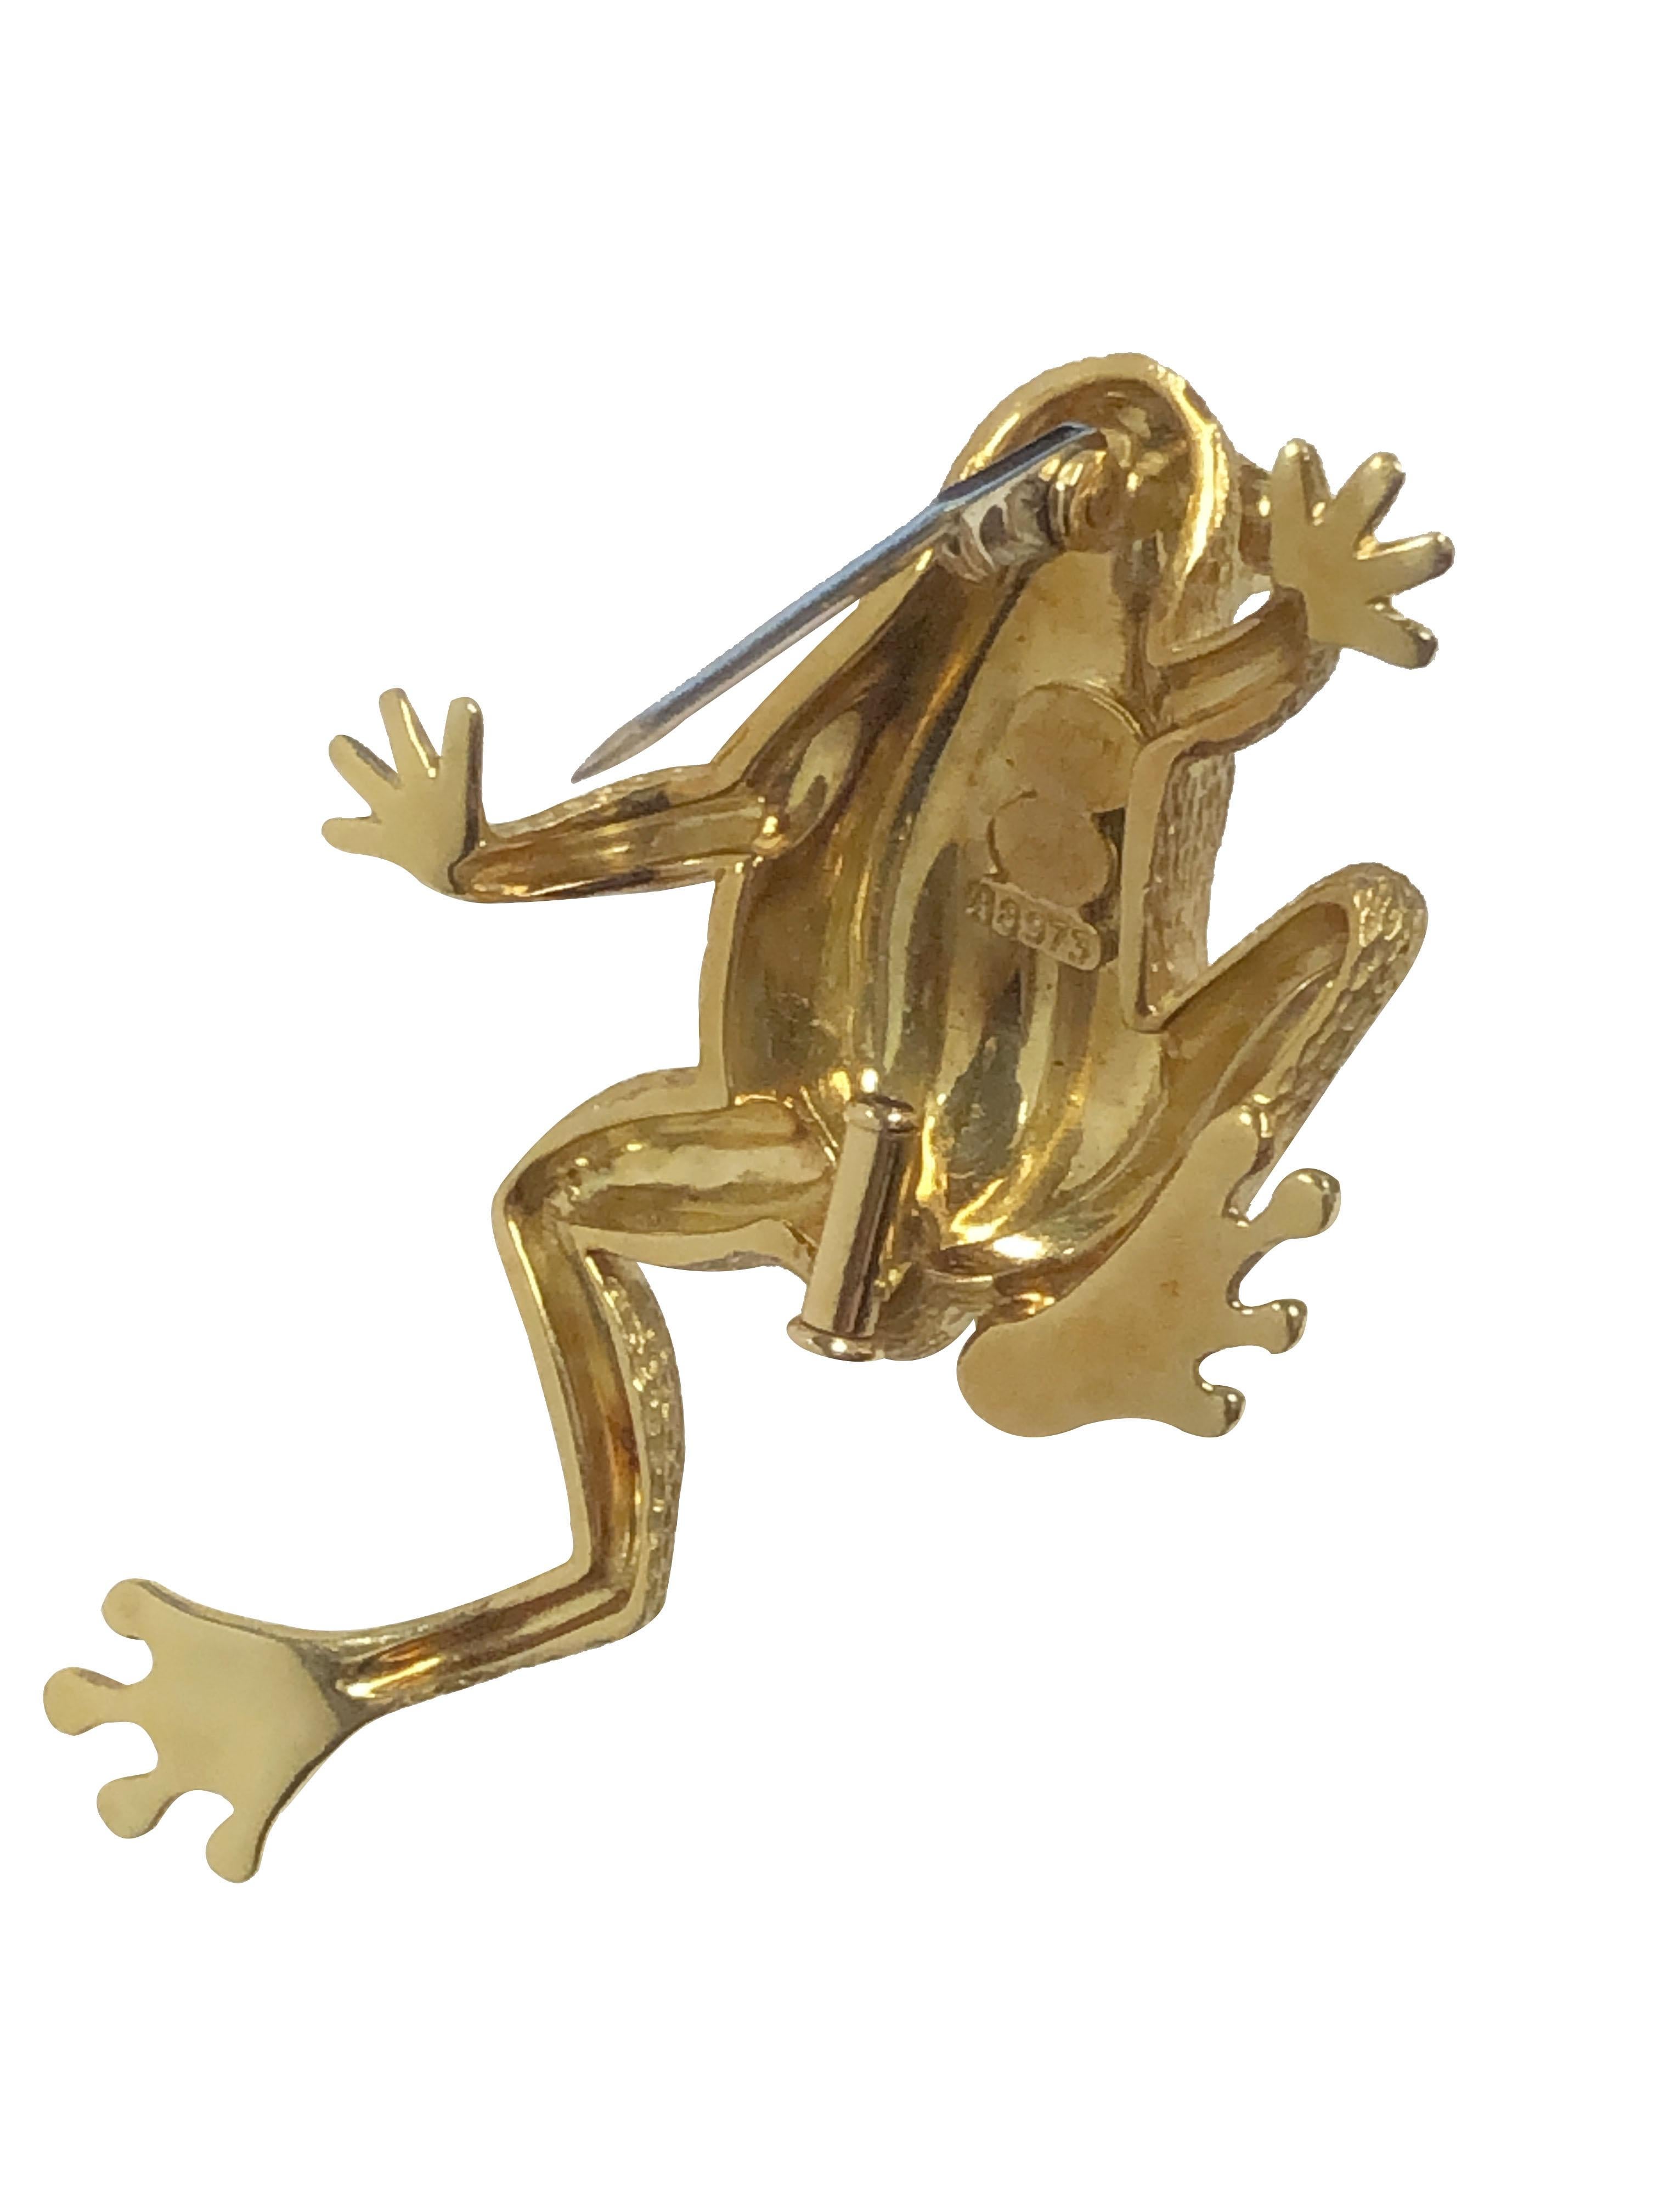 Circa 1990 Henry Dunay Frog Brooch, mesurant 2 1/8 inches in length X 1 1/4 inches et pesant 21.5 Grams. Très détaillé avec une finition texturée réaliste. Signés et numérotés.